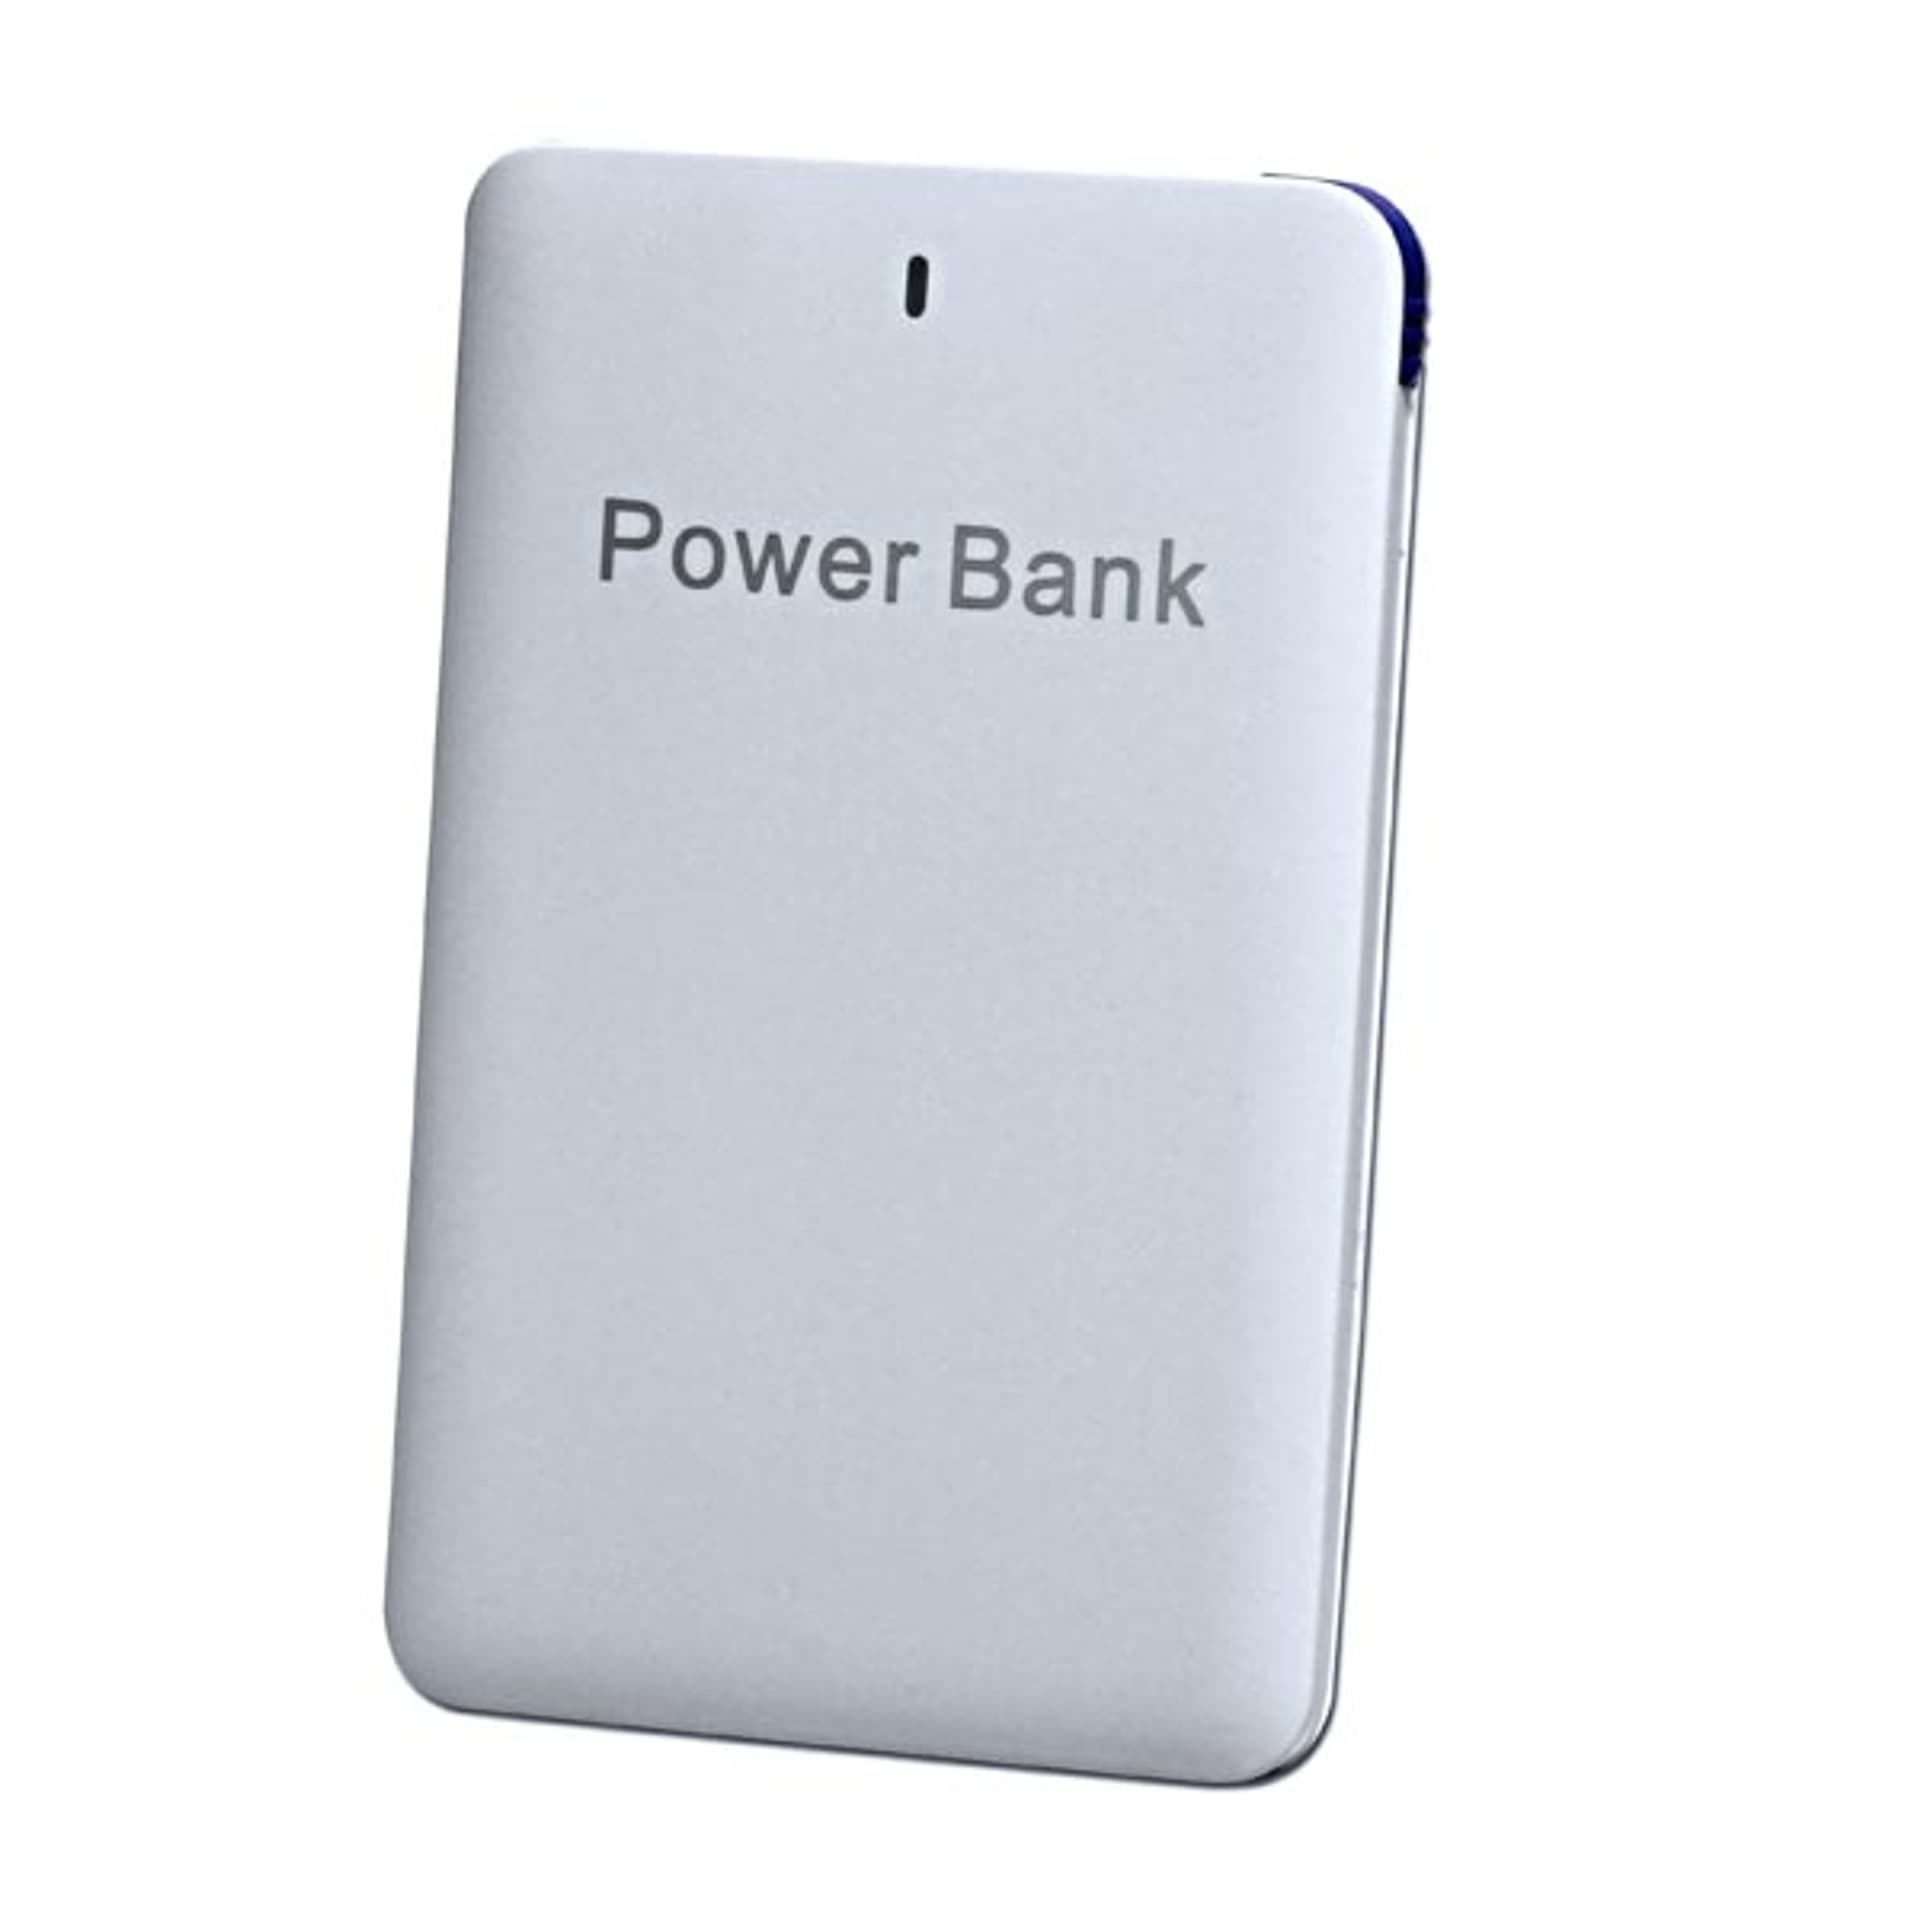 NoName Powerbank Power Bank Li-ion 5V 2500mAh do ładowania telefonów i innych urządzeń